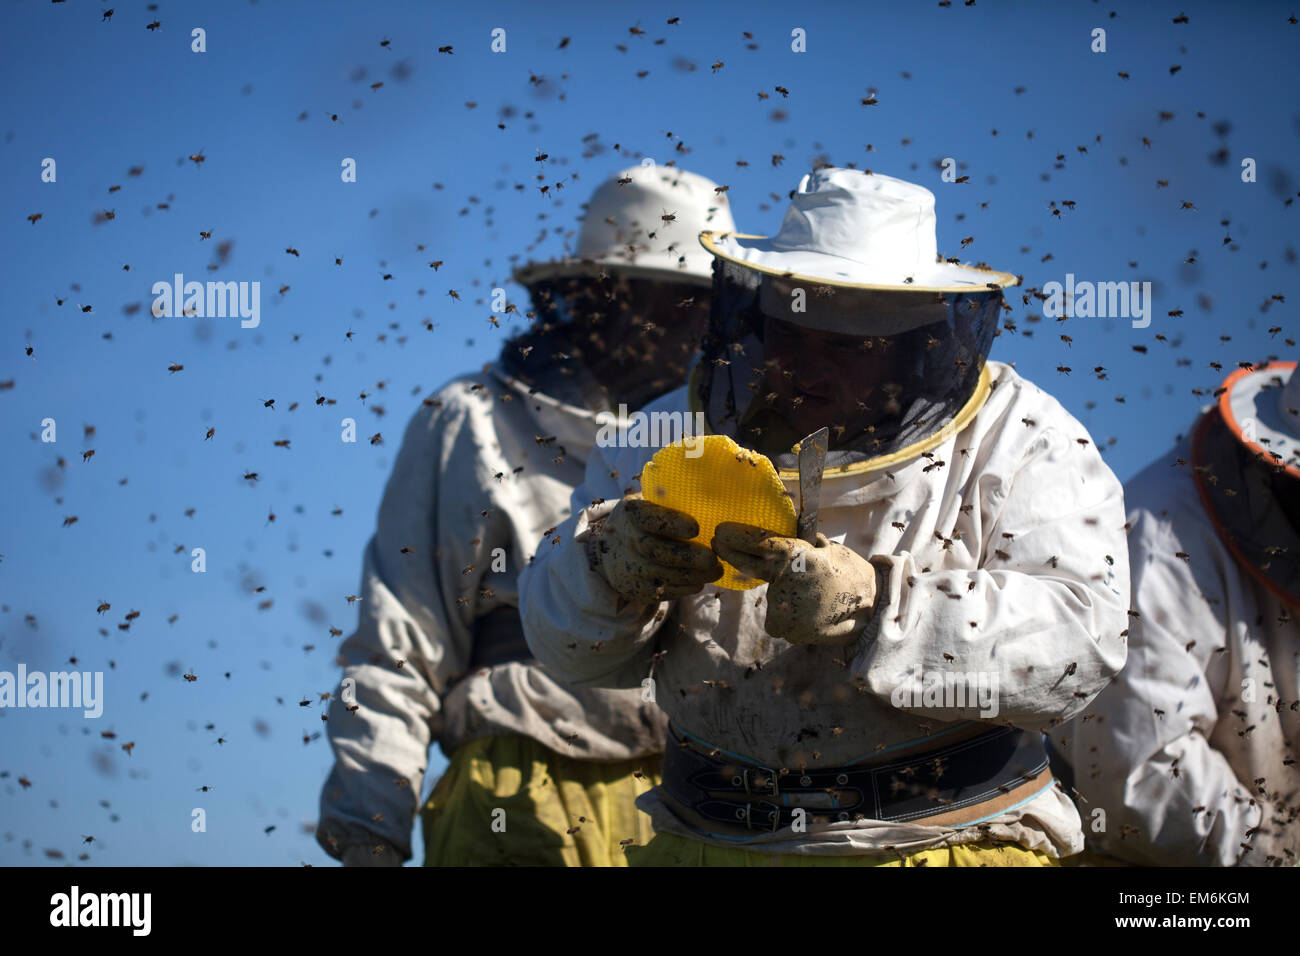 Imker arbeiten in einem Schwarm von Bienen Summen ein fliegen im Naturpark Los Alcornocales, Provinz Cadiz, Andalusien, Spanien Stockfoto